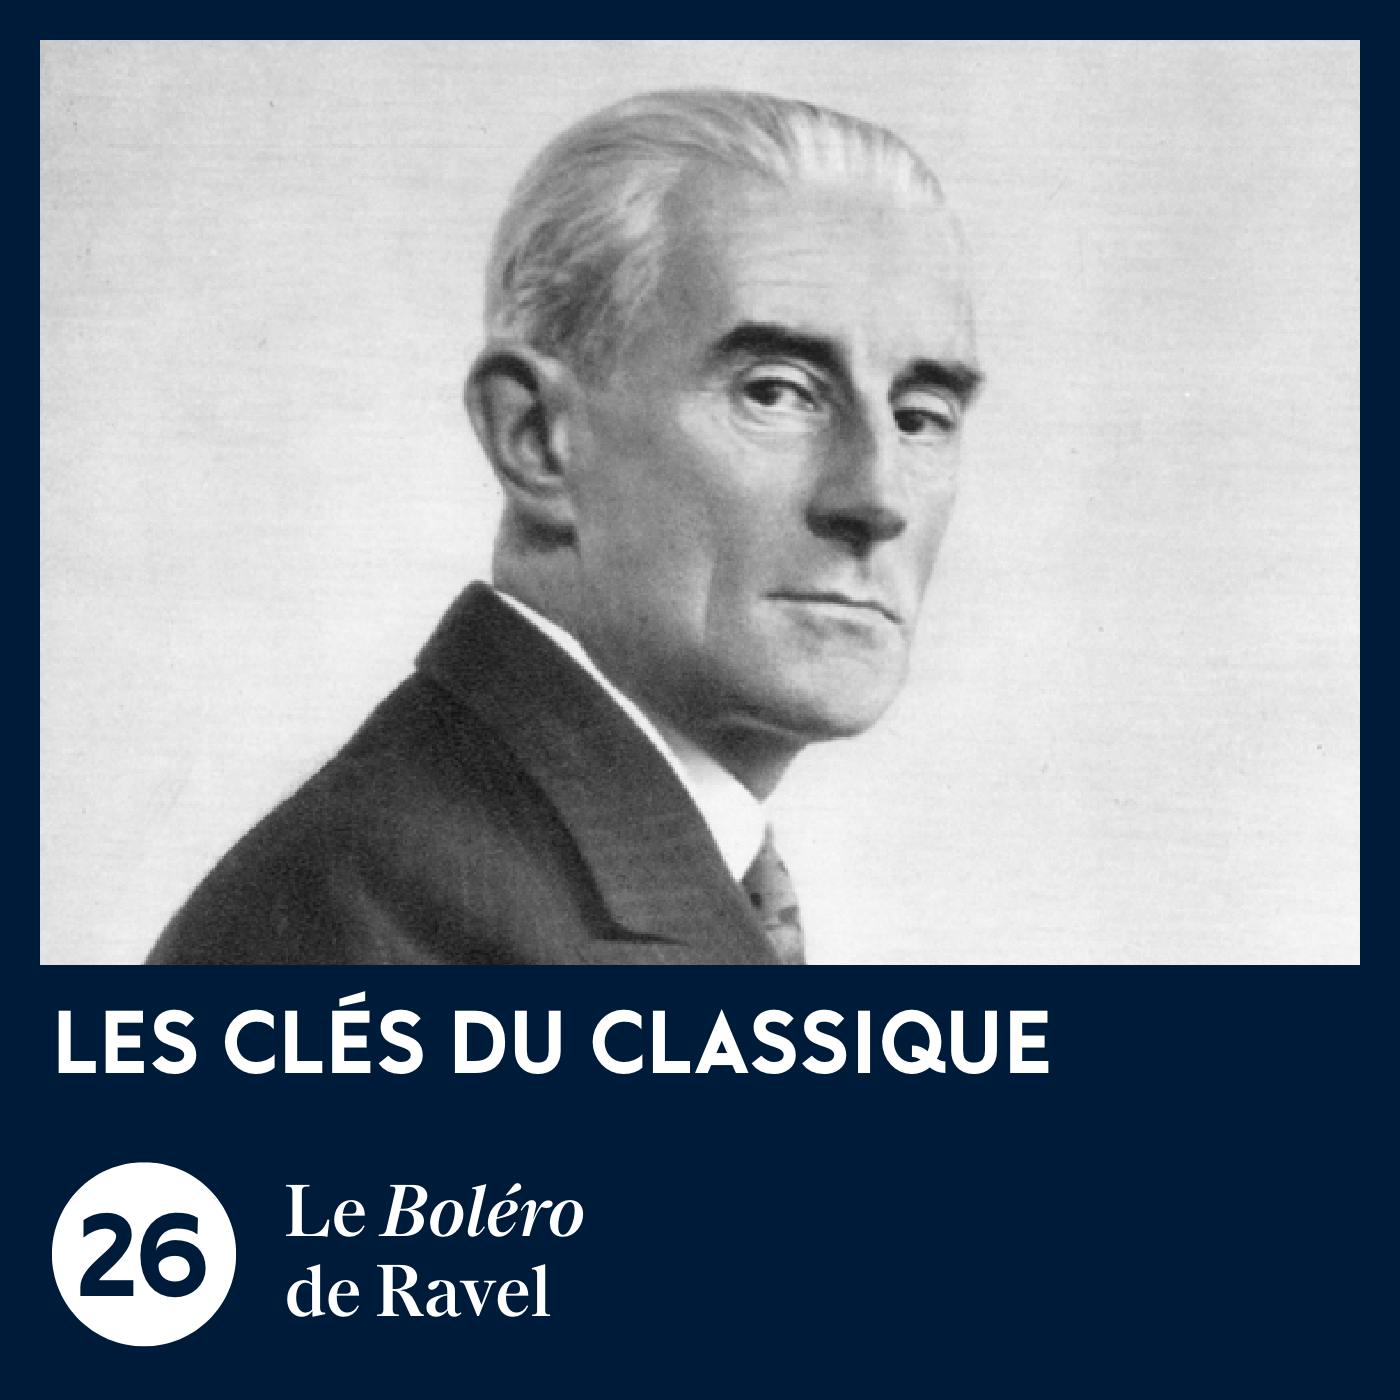 Le Boléro de Ravel | Les Clés du classique #26